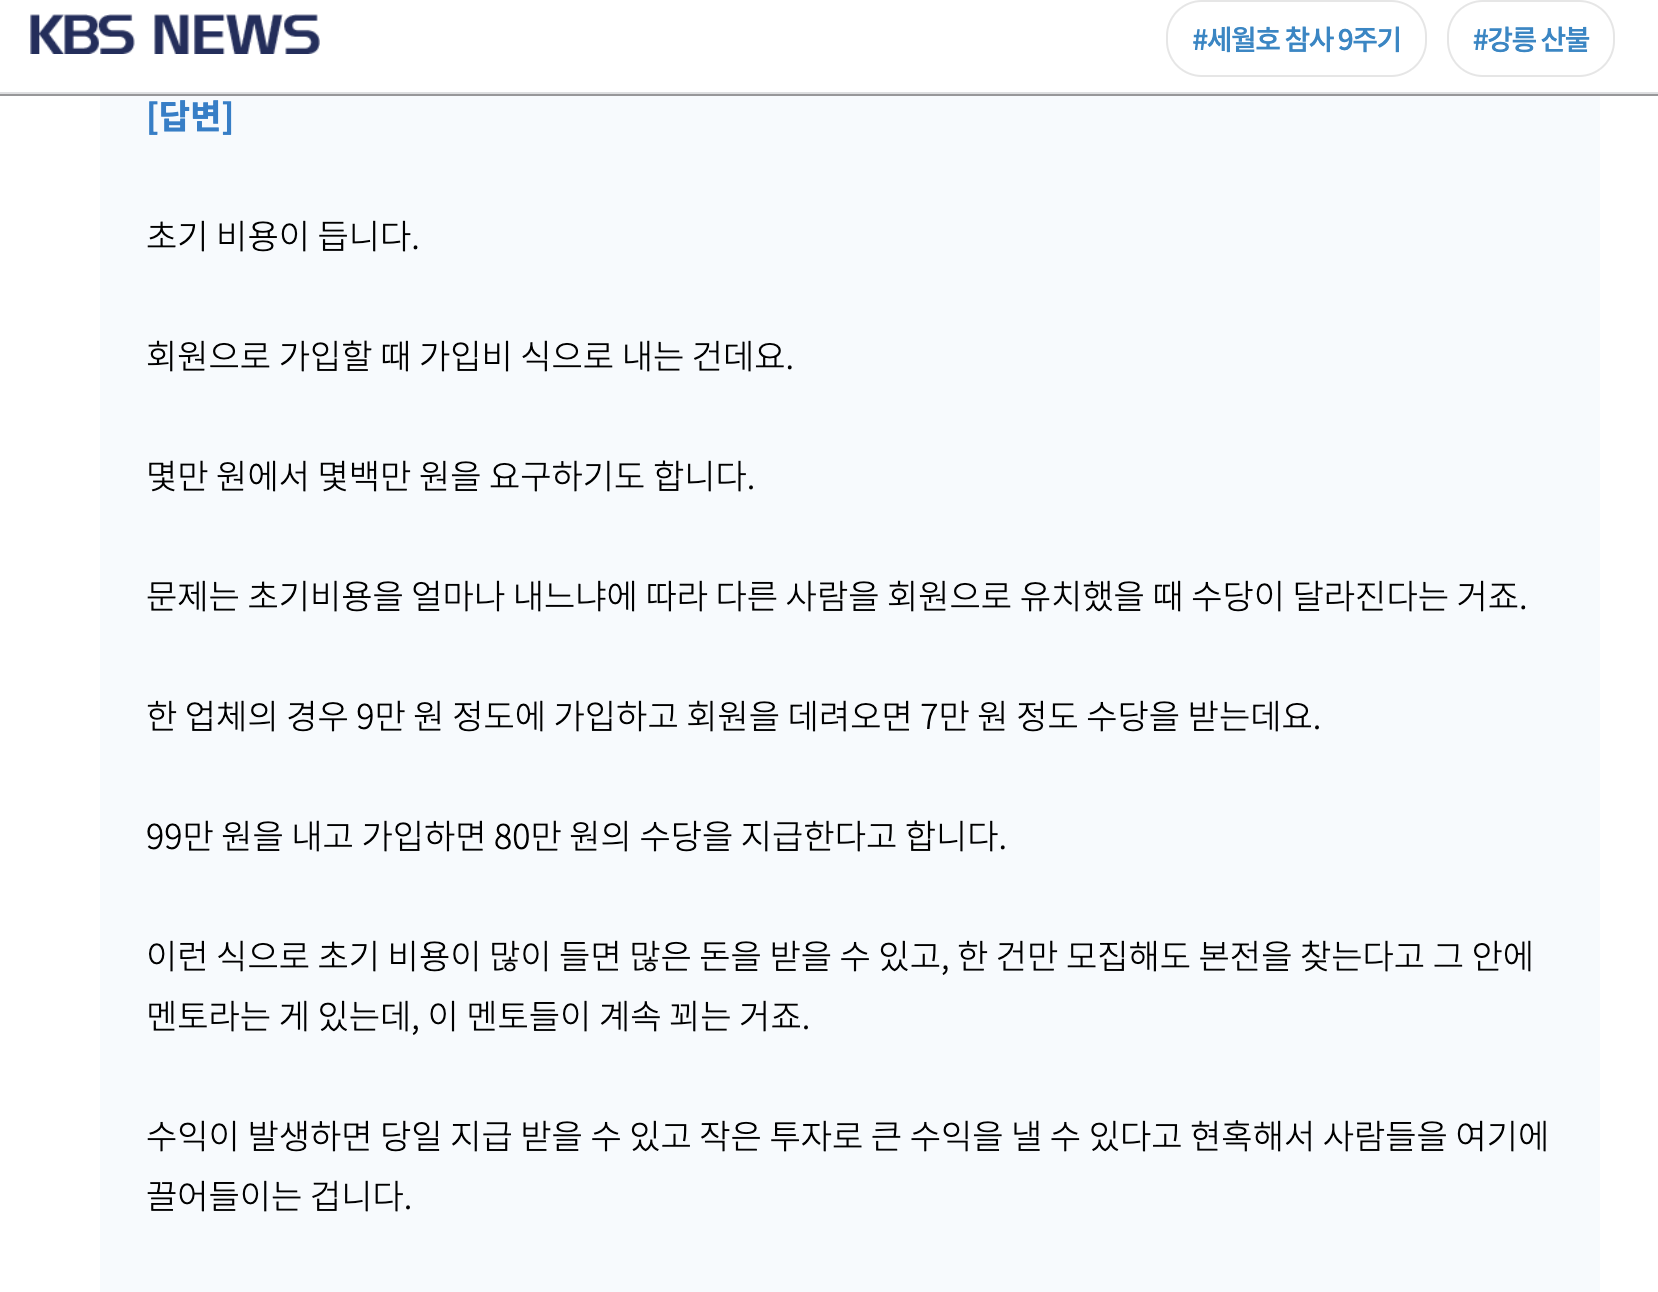 KBS News 부업 초기비용 관련 뉴스